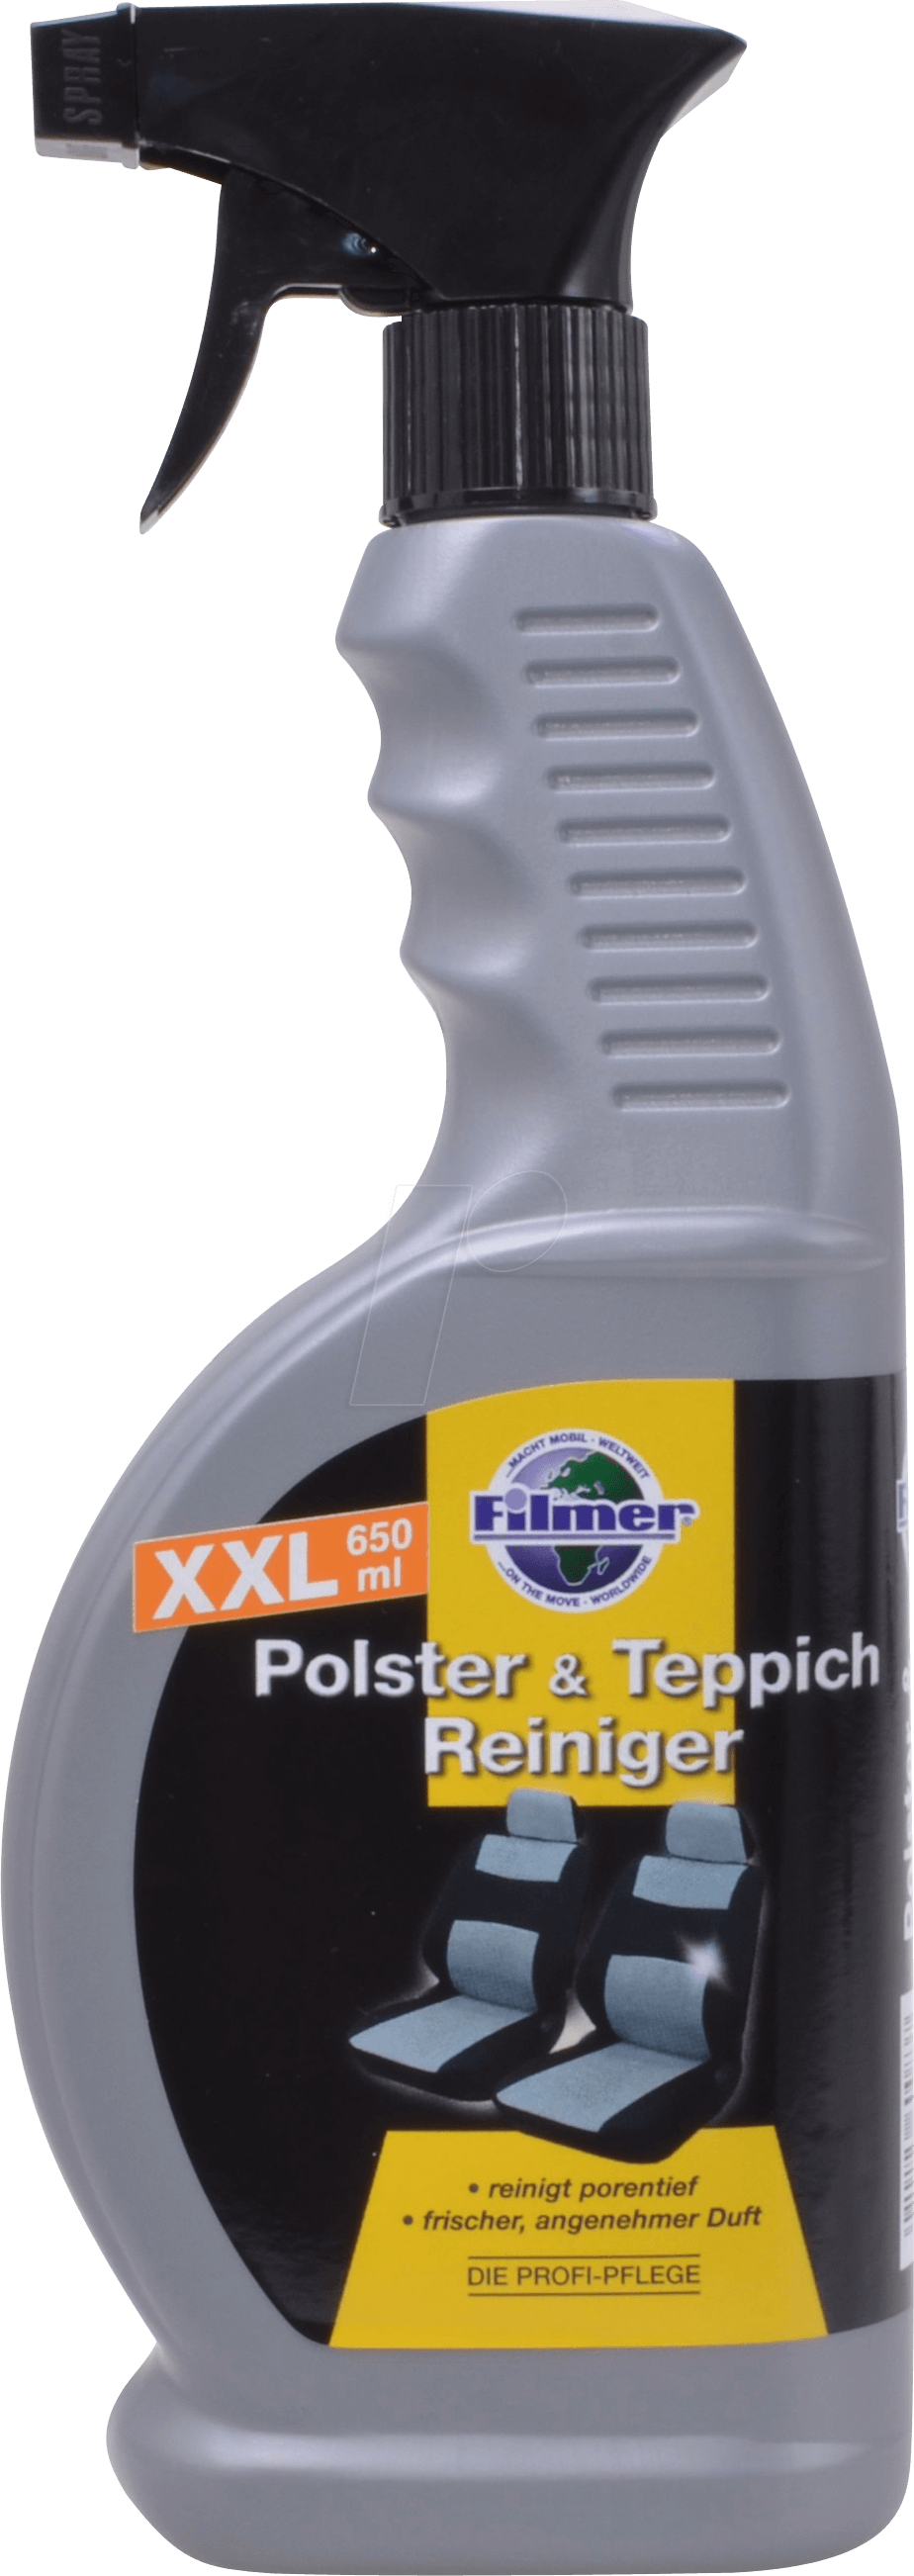 KFZ 60083 - KFZ - Polster-/Teppichreiniger-Spray, 650ml von FREI